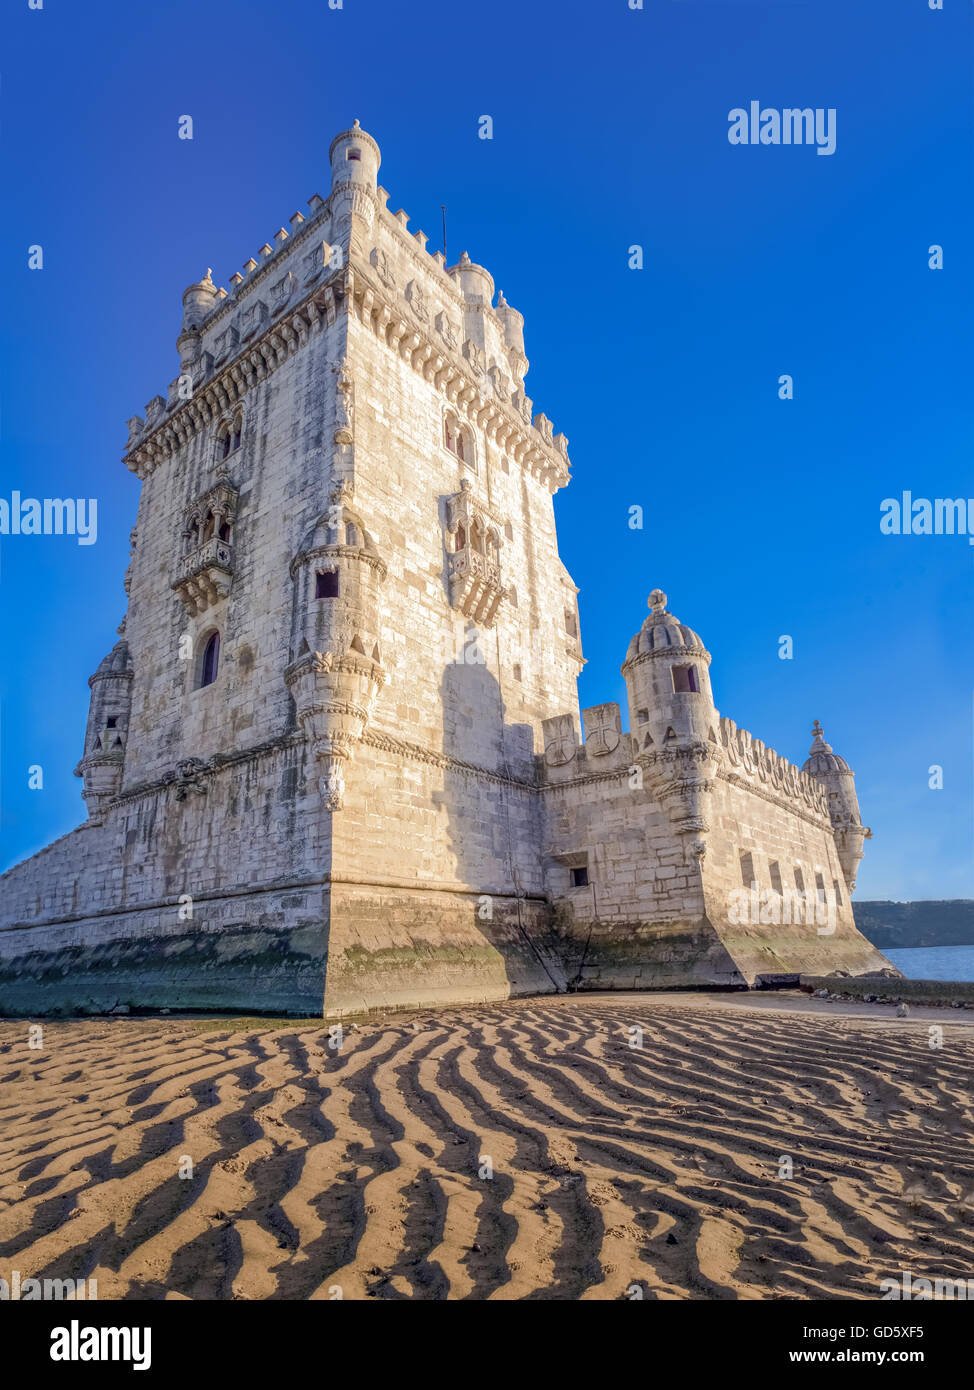 Turm von Belem (Torre de Belem, manuelinischen Stil, portugiesischen Spätgotik). Ein UNESCO-Weltkulturerbe. Lissabon, Portugal Stockfoto